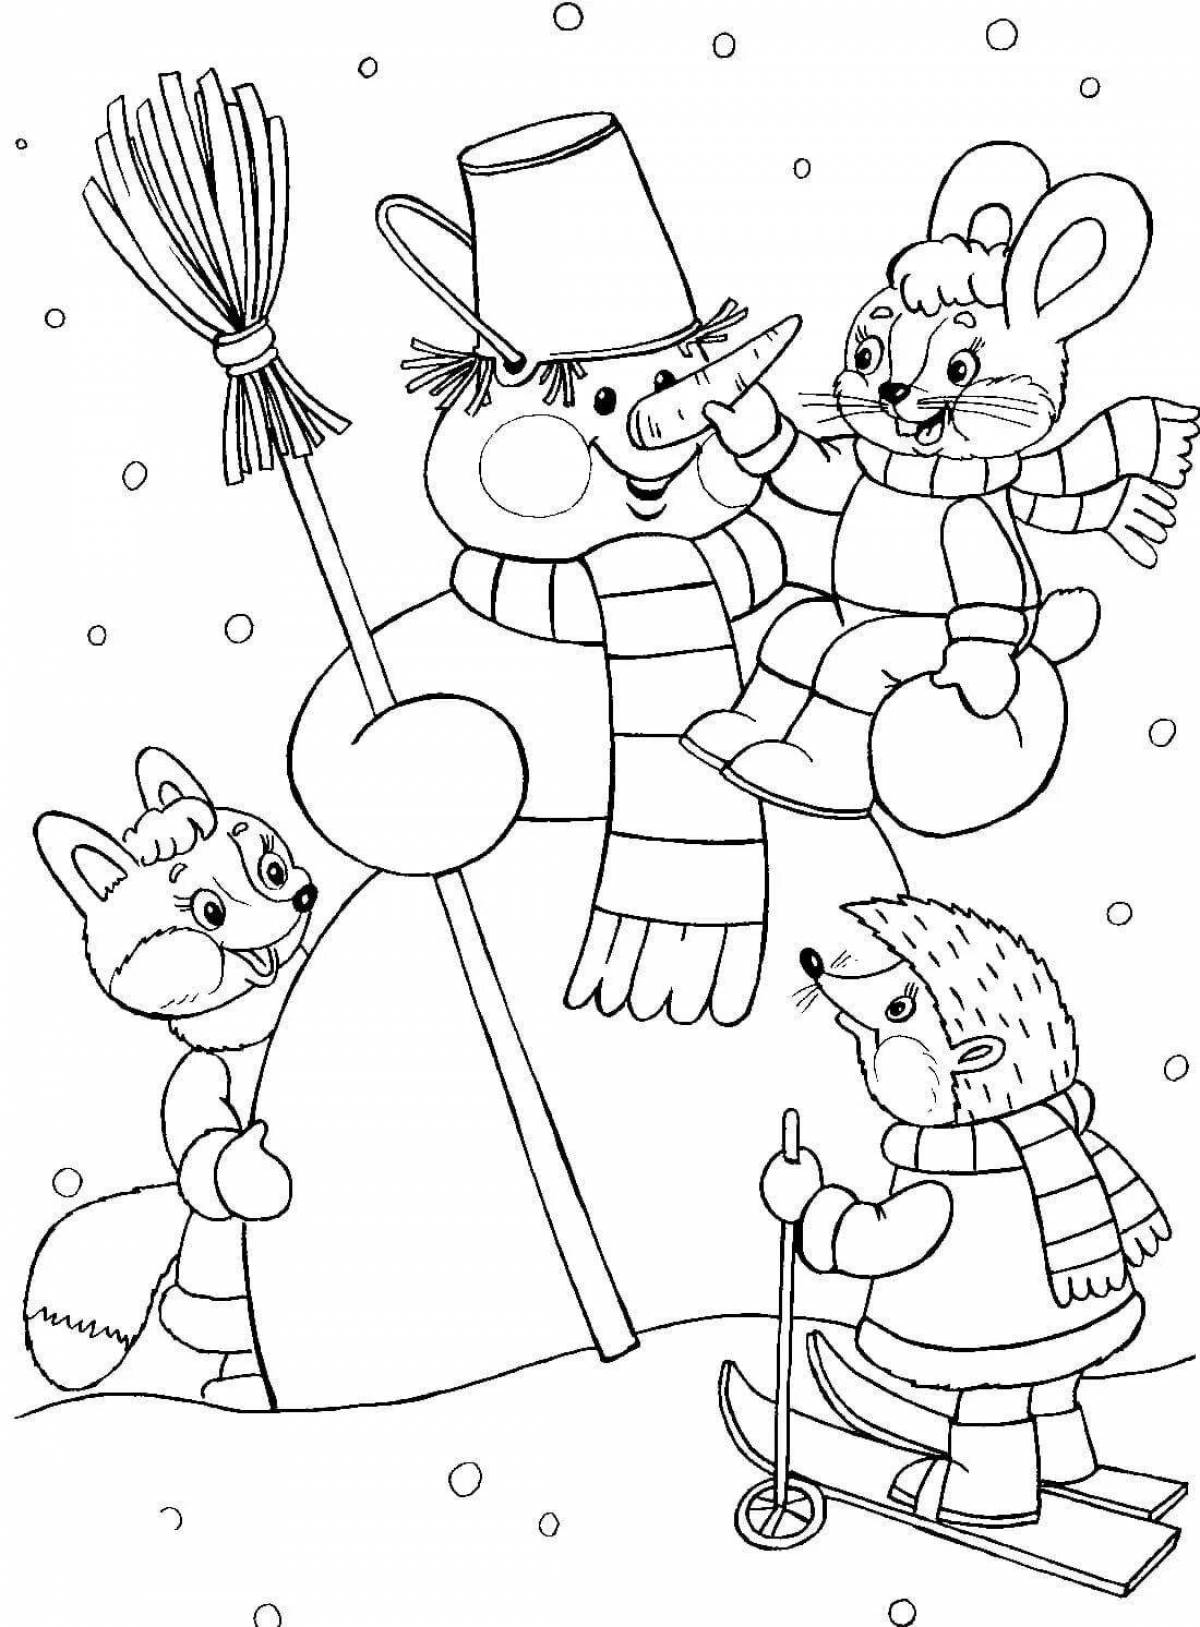 Shiny santa claus and bunny coloring book